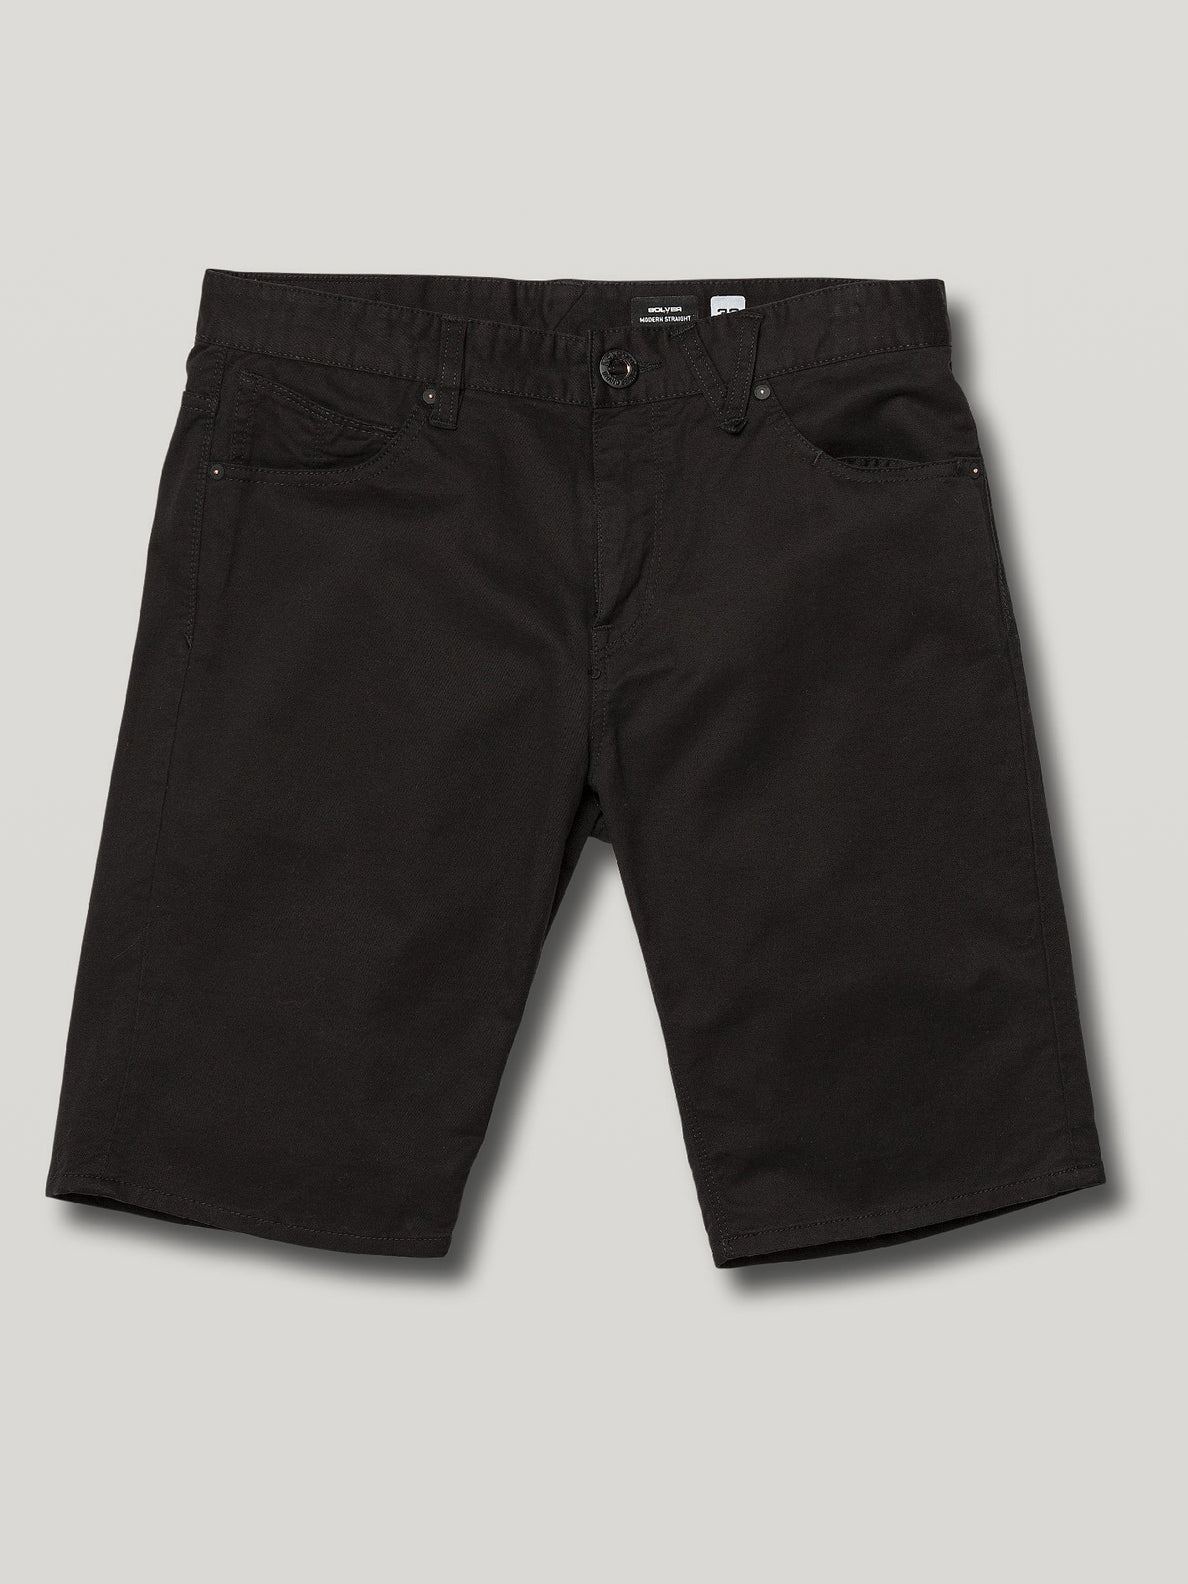 Solver Lite 5 Pocket Shorts - Black